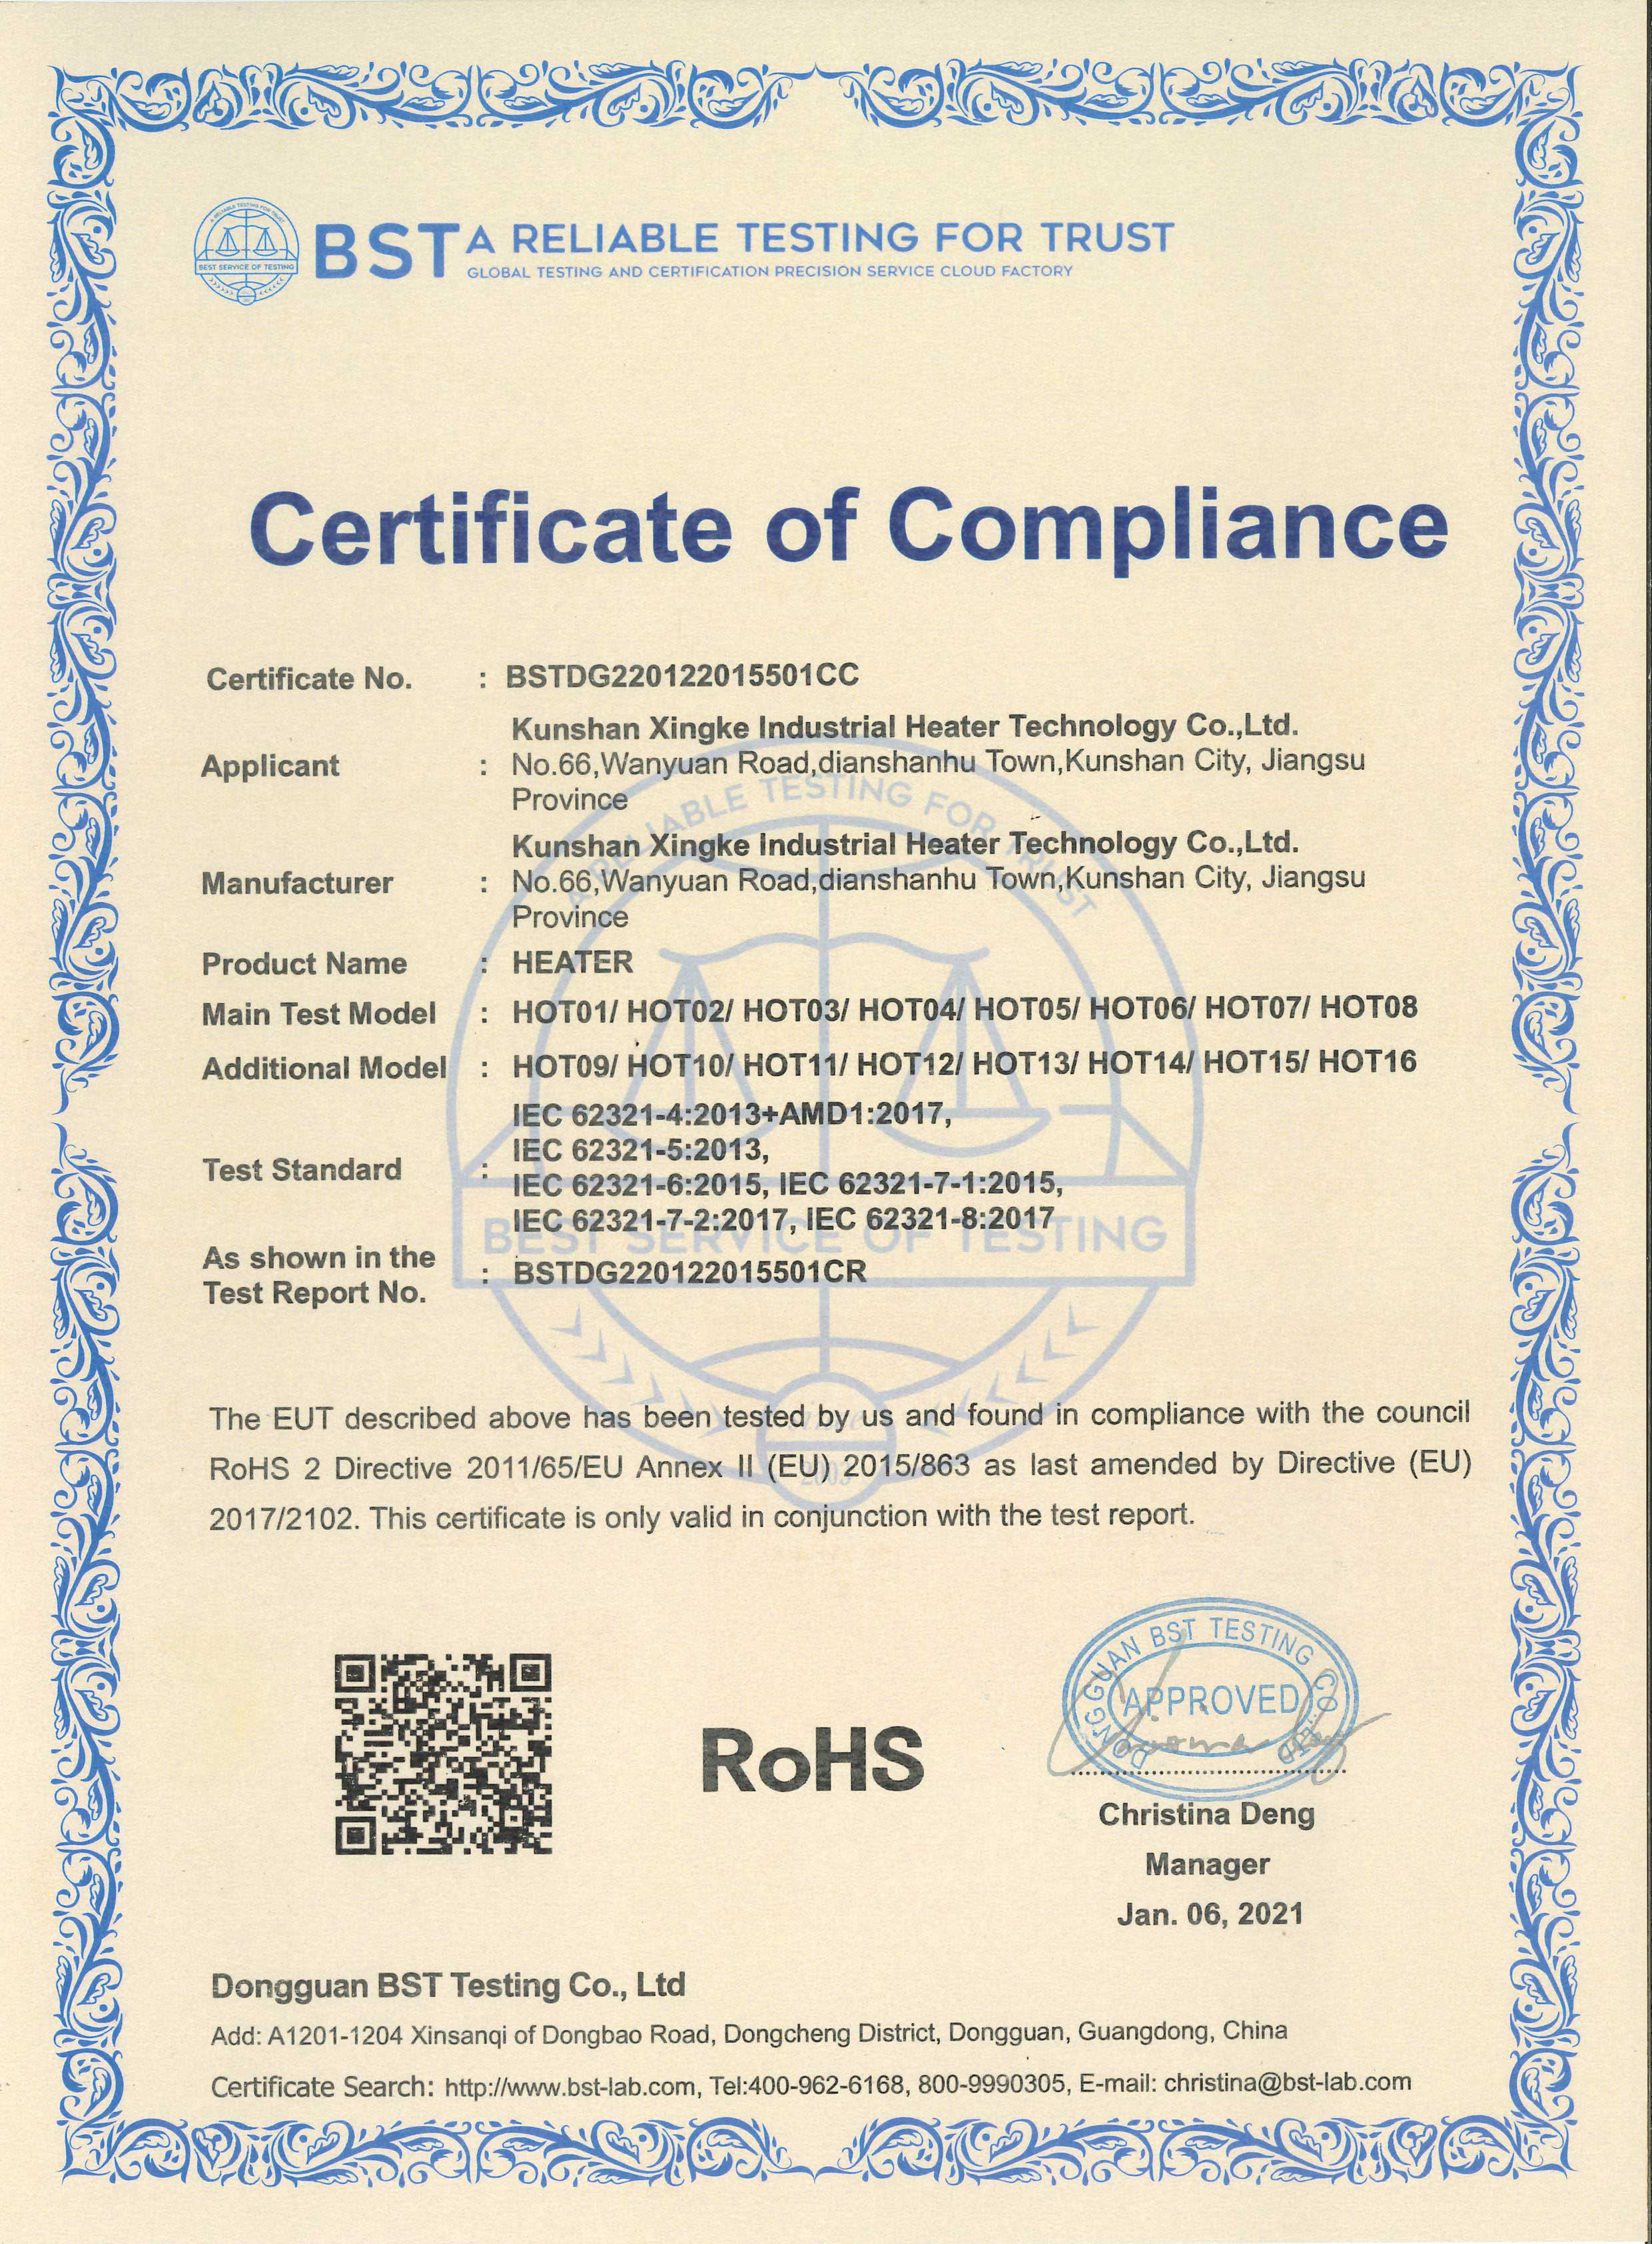 昆山乐鱼官方网站ROHS证书